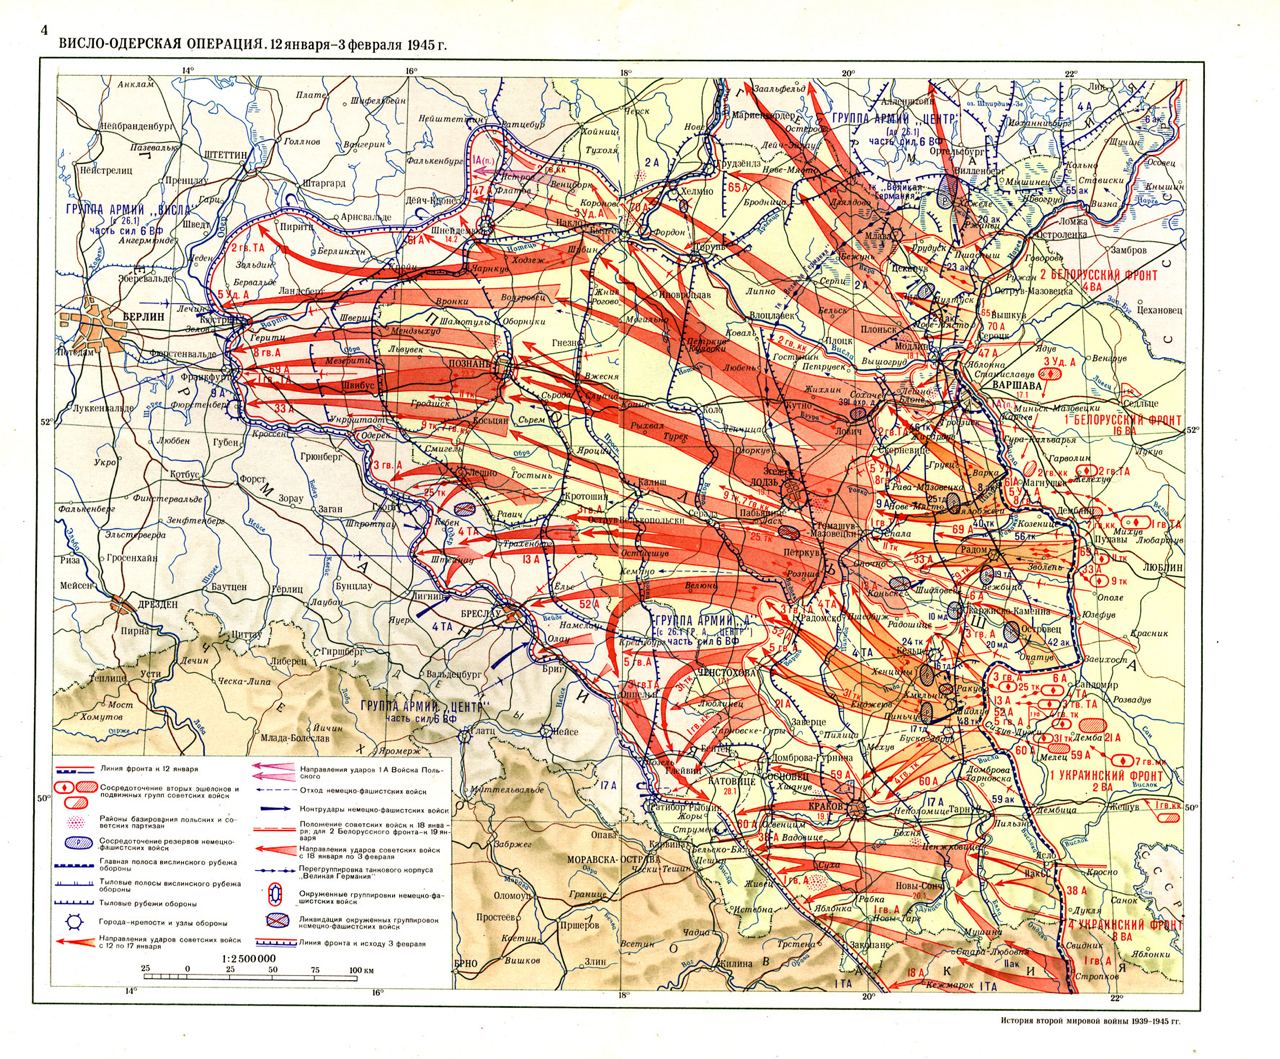 Карта Висло-Одерской операции с подробным указанием направлений действий советских фронтов, а также немецких позиций 